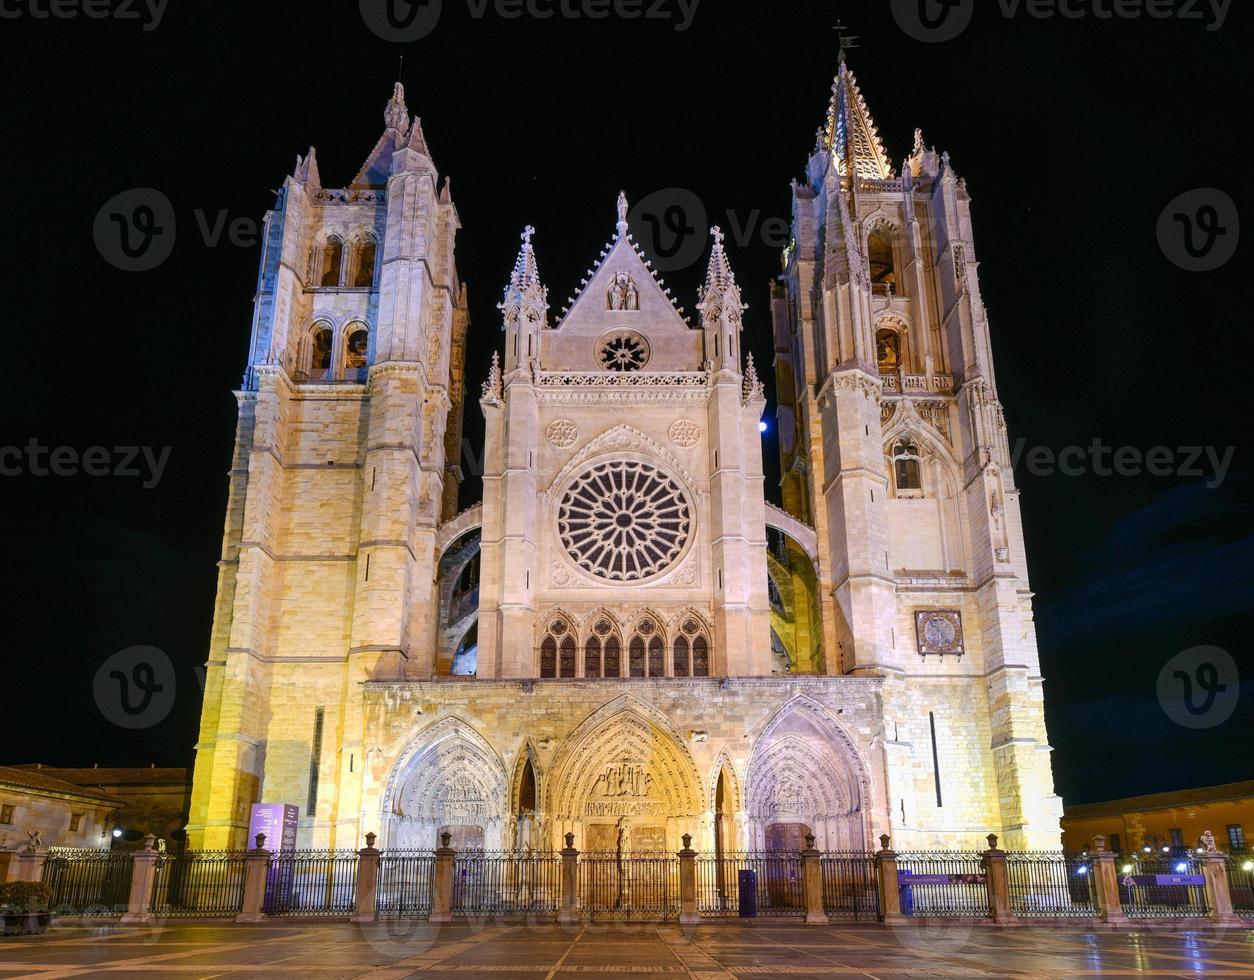 hoofd gotisch facade van leon kathedraal in de avond, Spanje foto